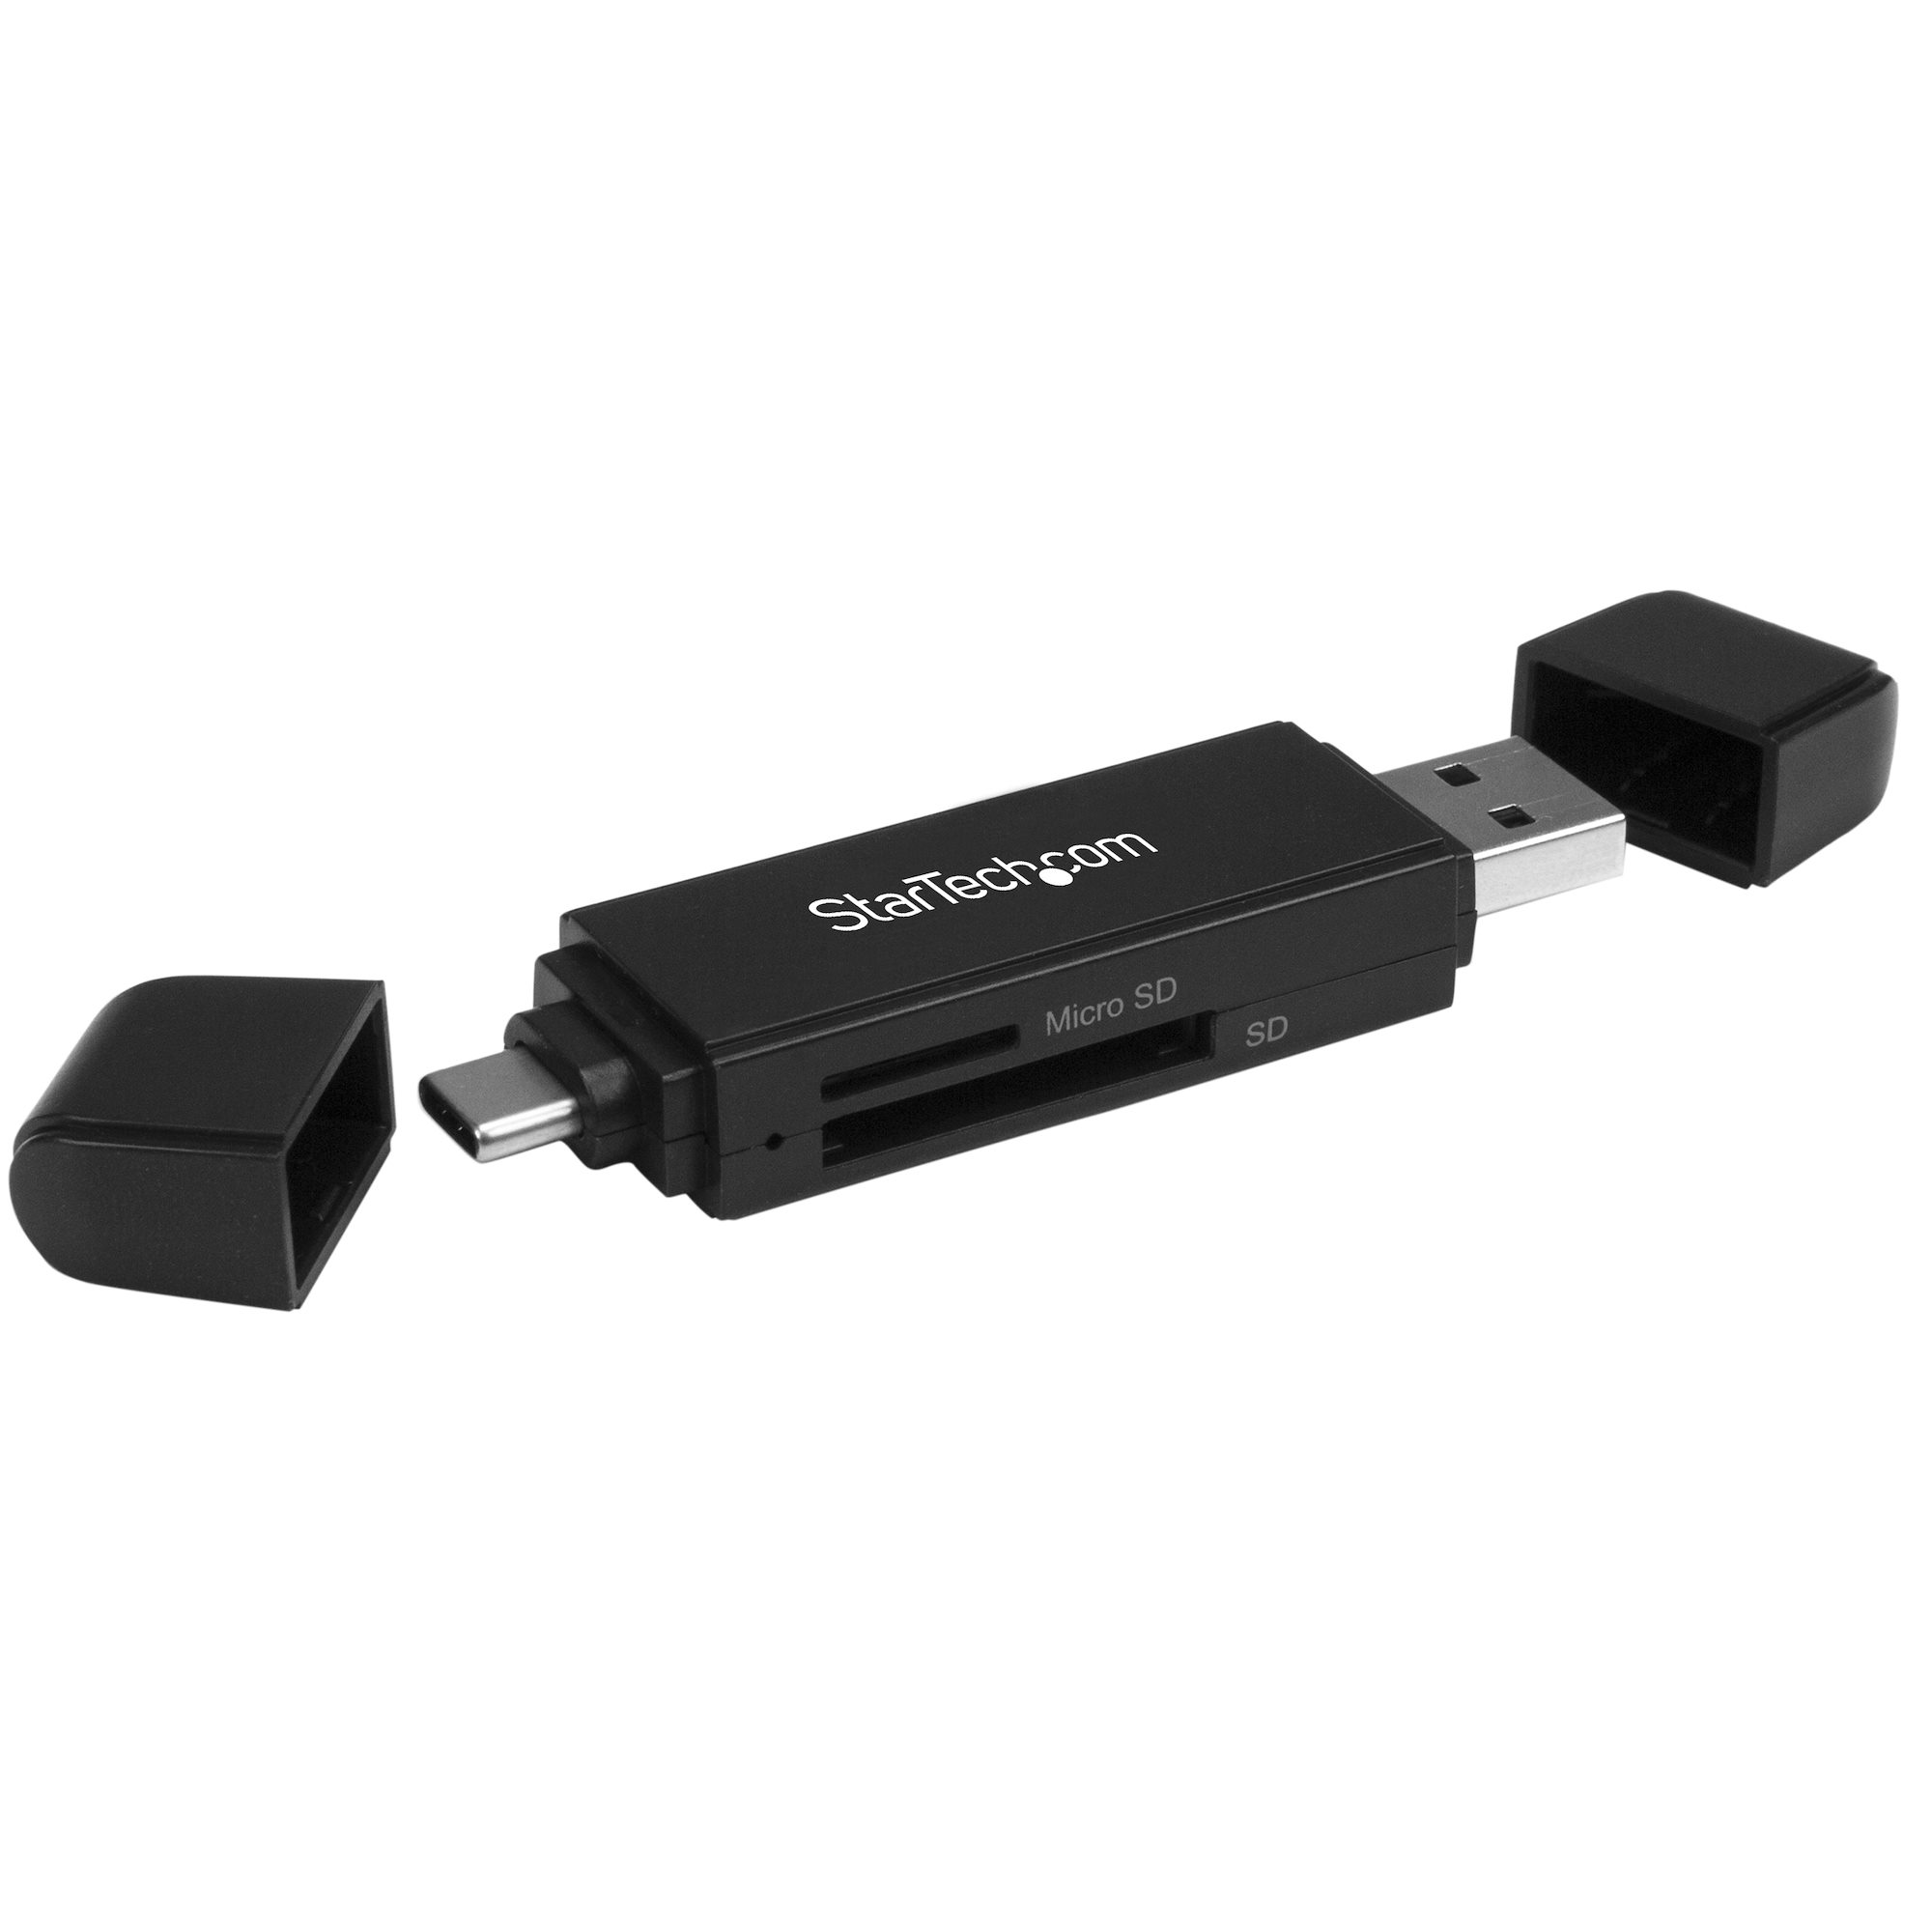 StarTech.com Lecteur de cartes CFast 2.0 - USB 3.0 - Lecteur carte